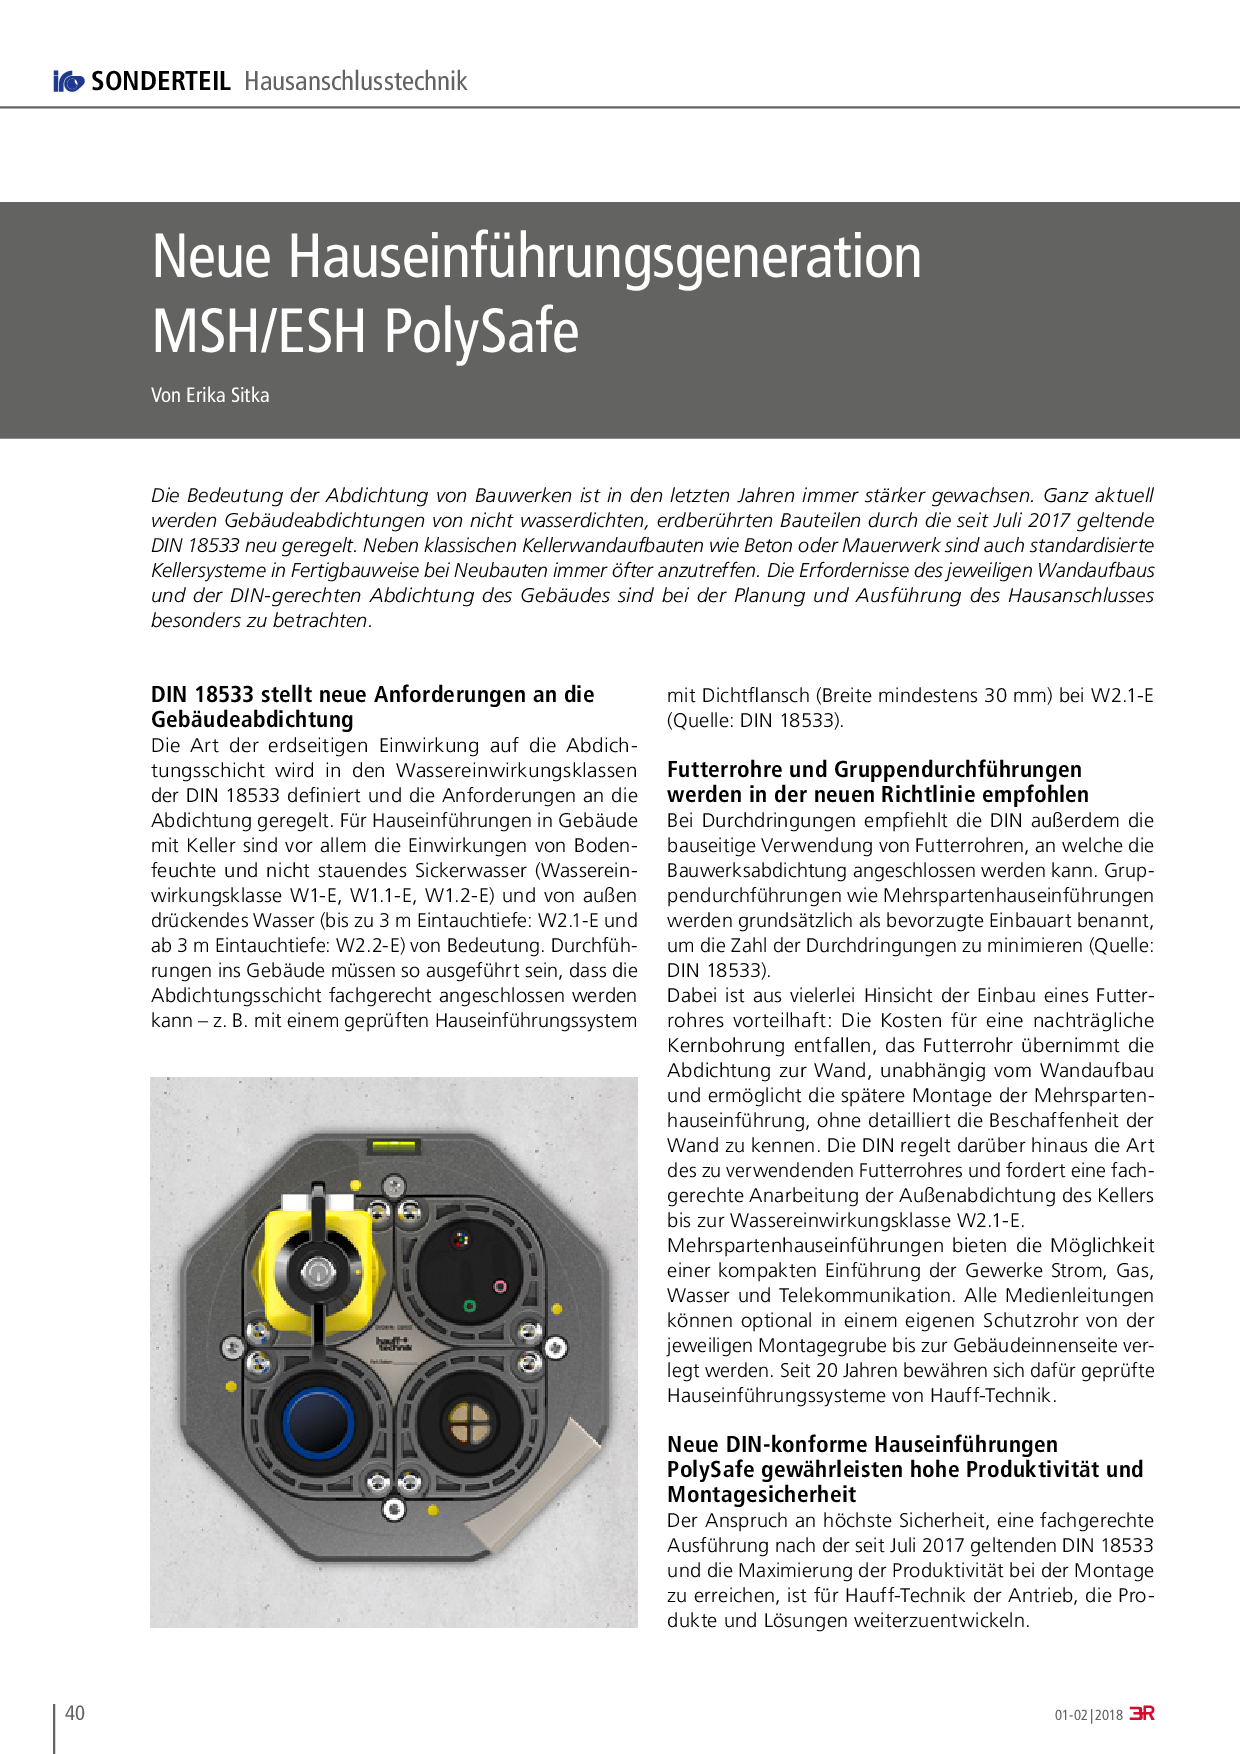 Neue Hauseinführungsgeneration MSH/ESH PolySafe